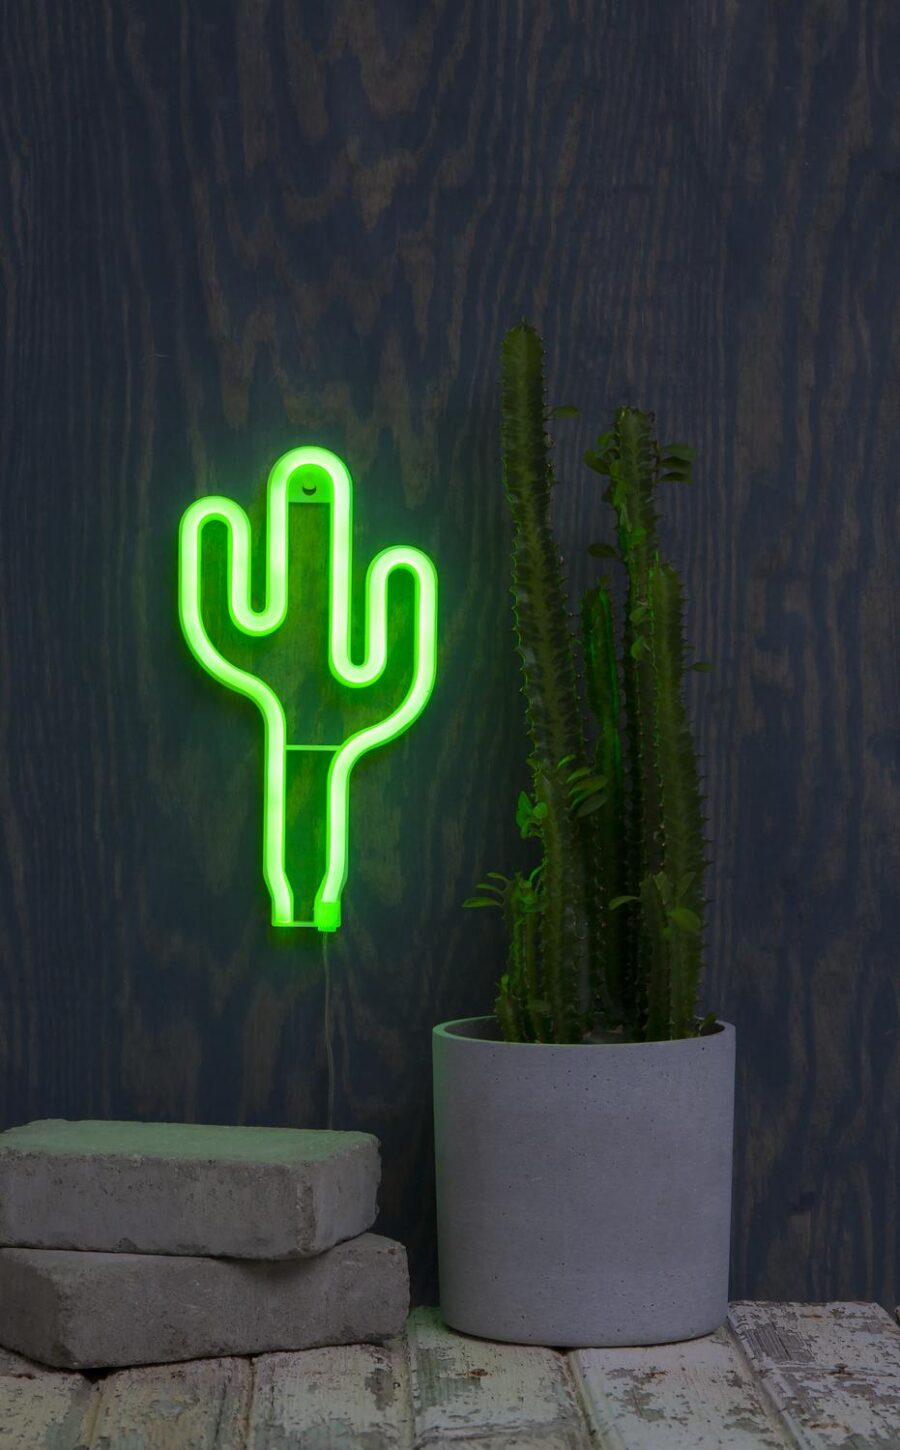 Hängande dekoration Neonlight Kaktus